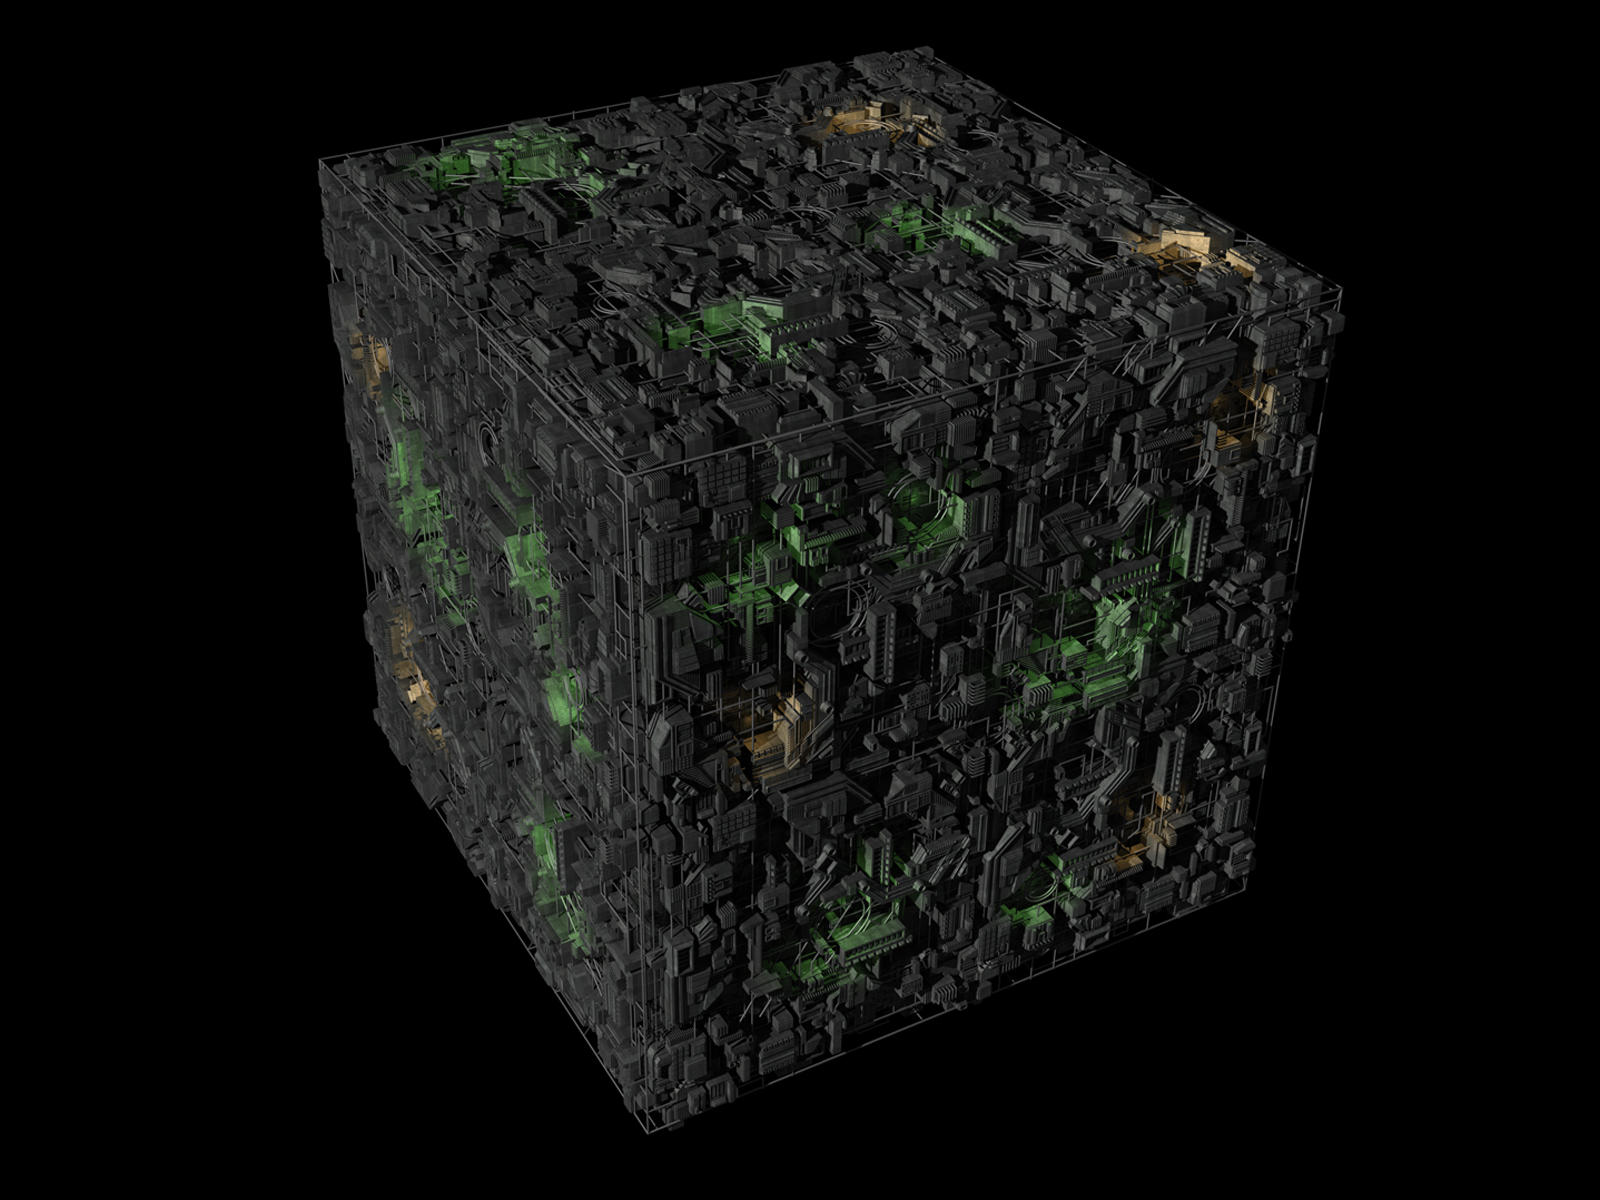 borg_cube___reworked_by_metlesitsfleetyards-d5ie1vy.jpg